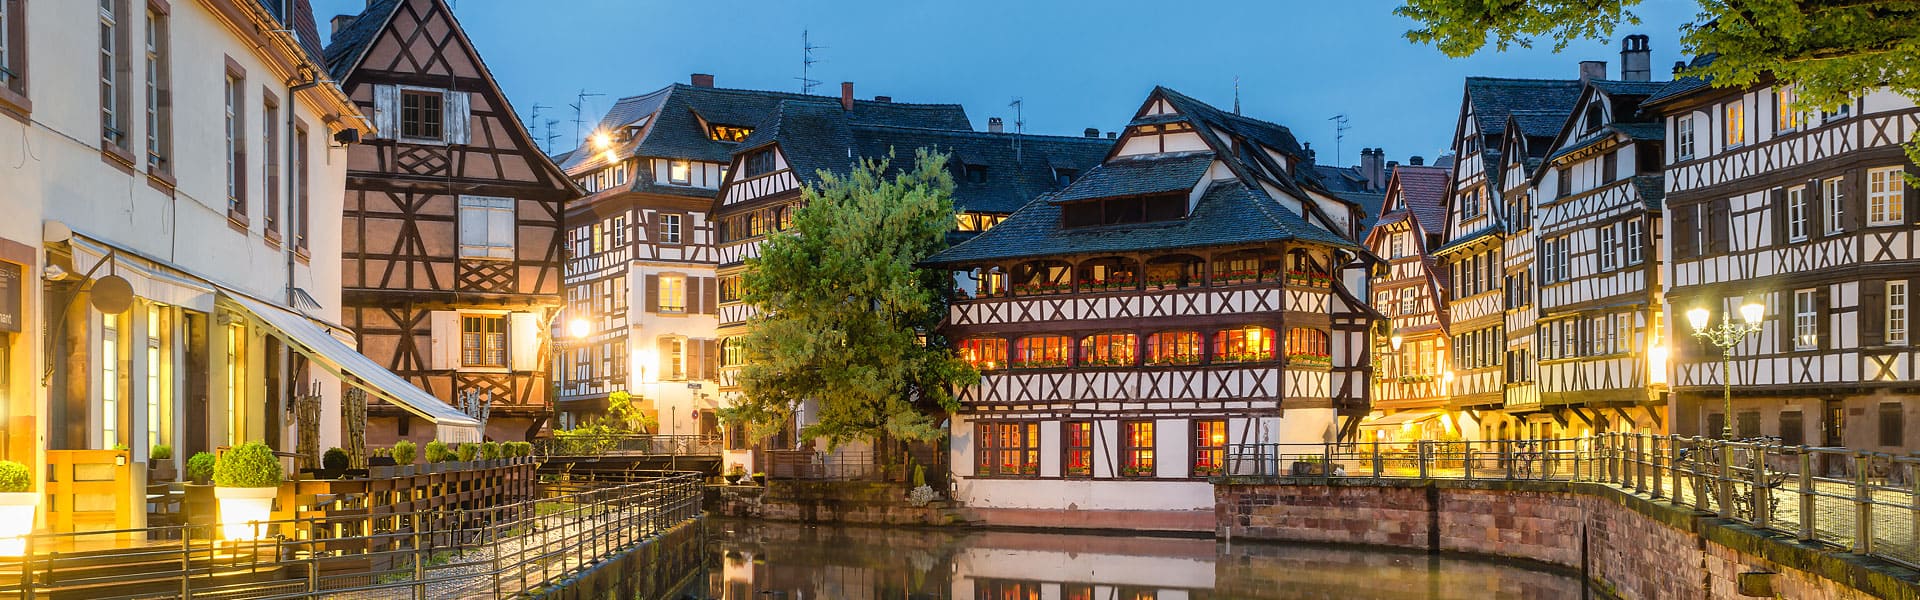 Le petite France - Strassburg im Elsass - Travel Tipps in der Stadt